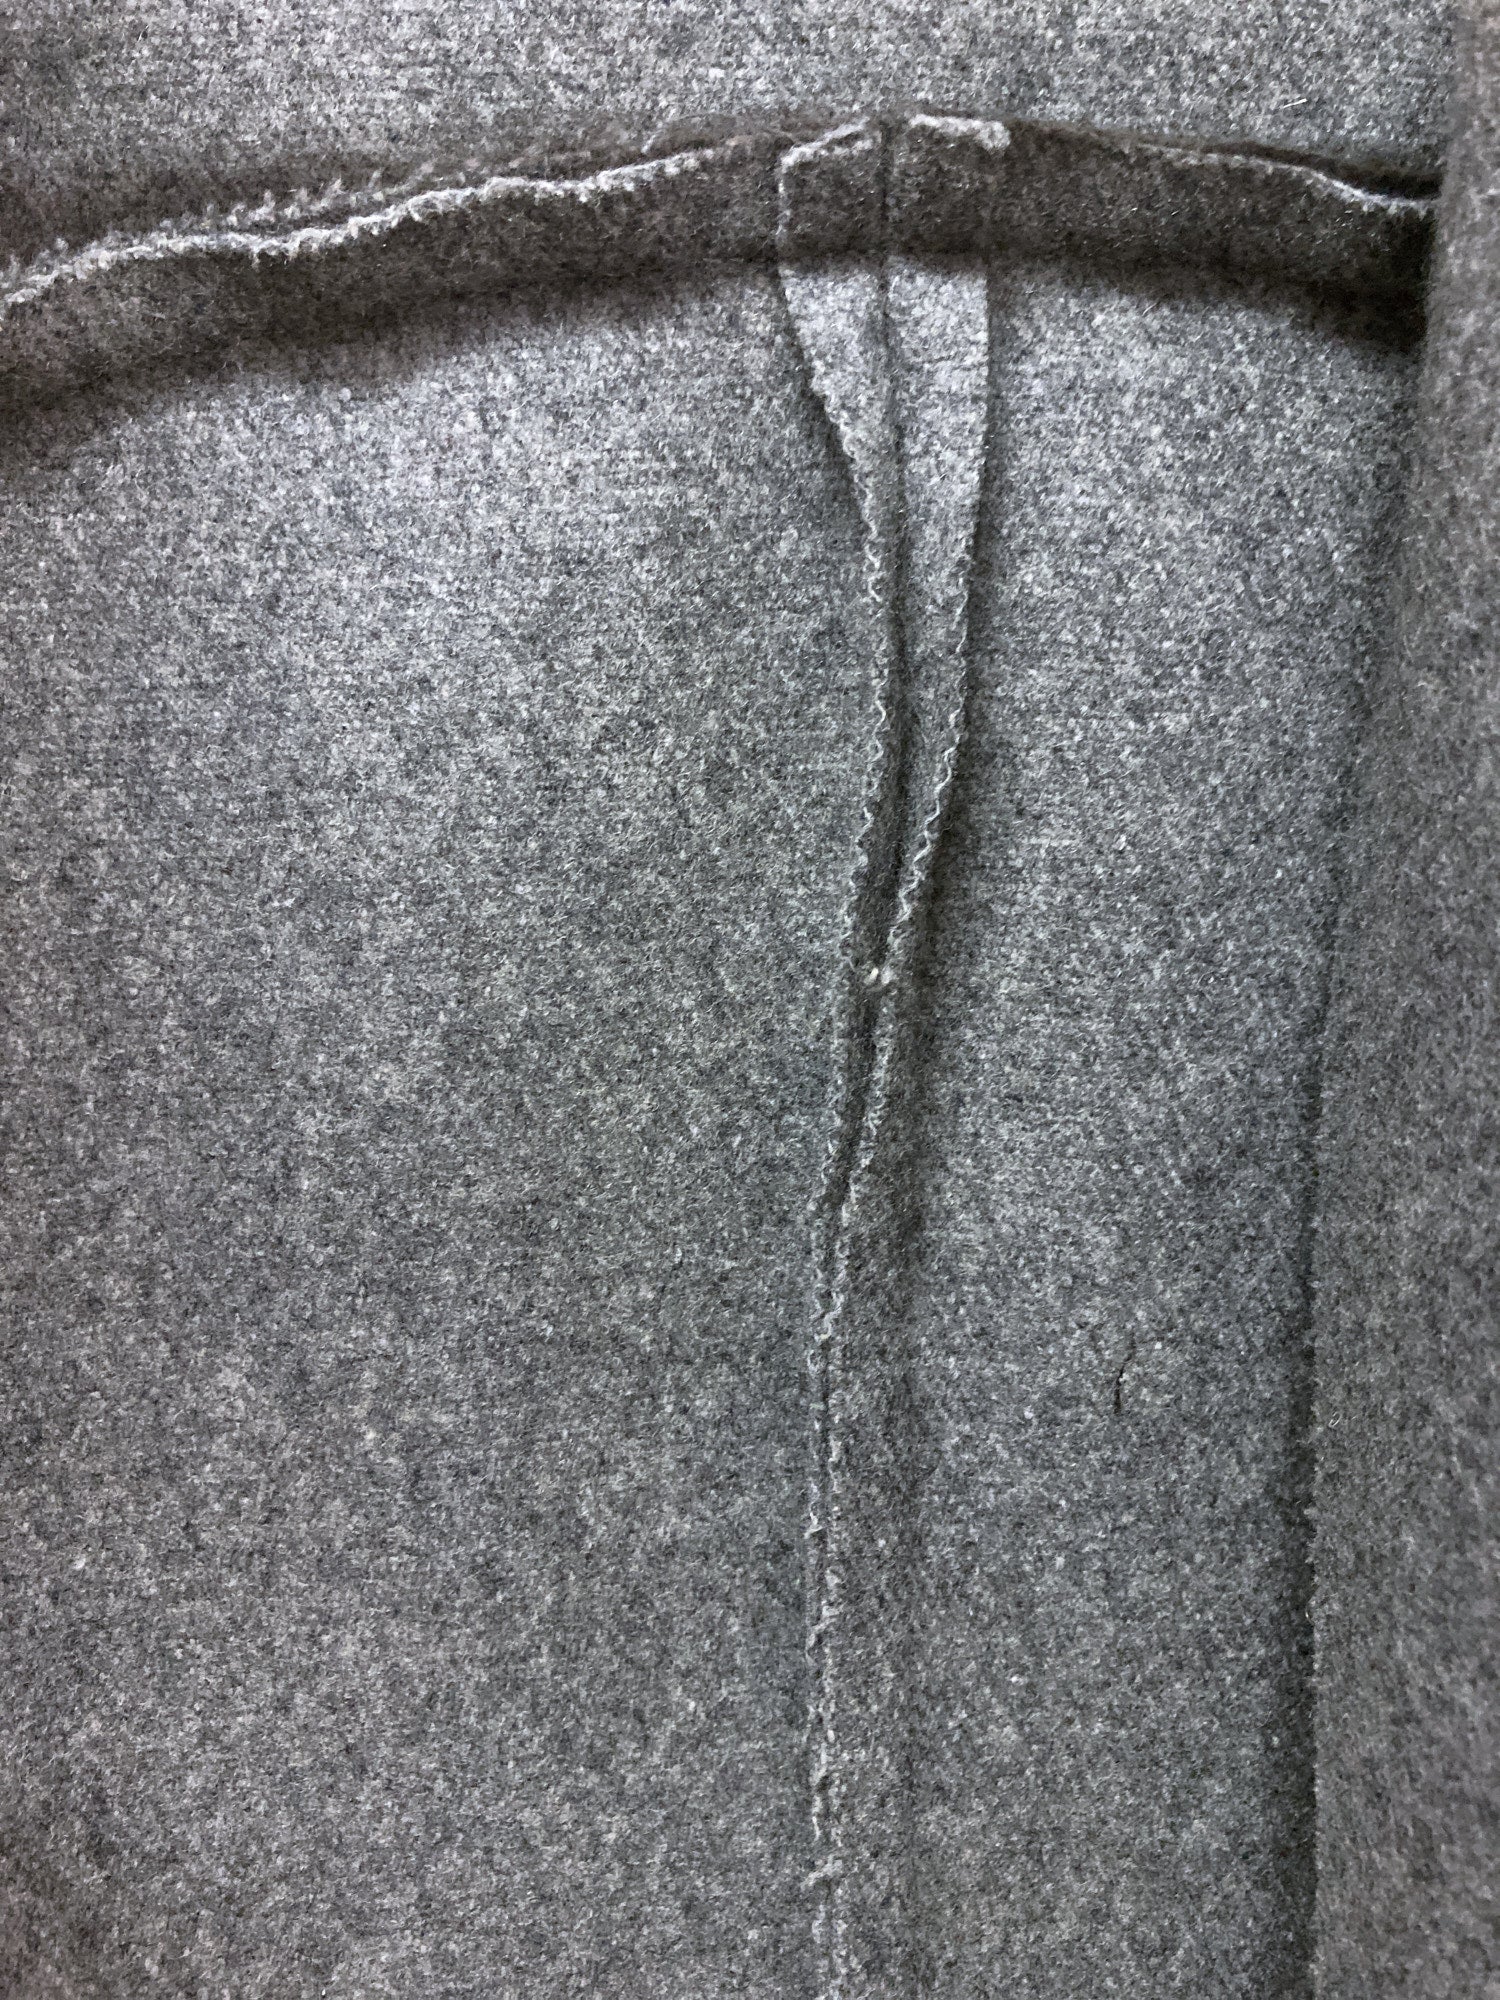 Maison Martin Margiela 6 1990s 2000s grey wool melton reversed placket coat - 42